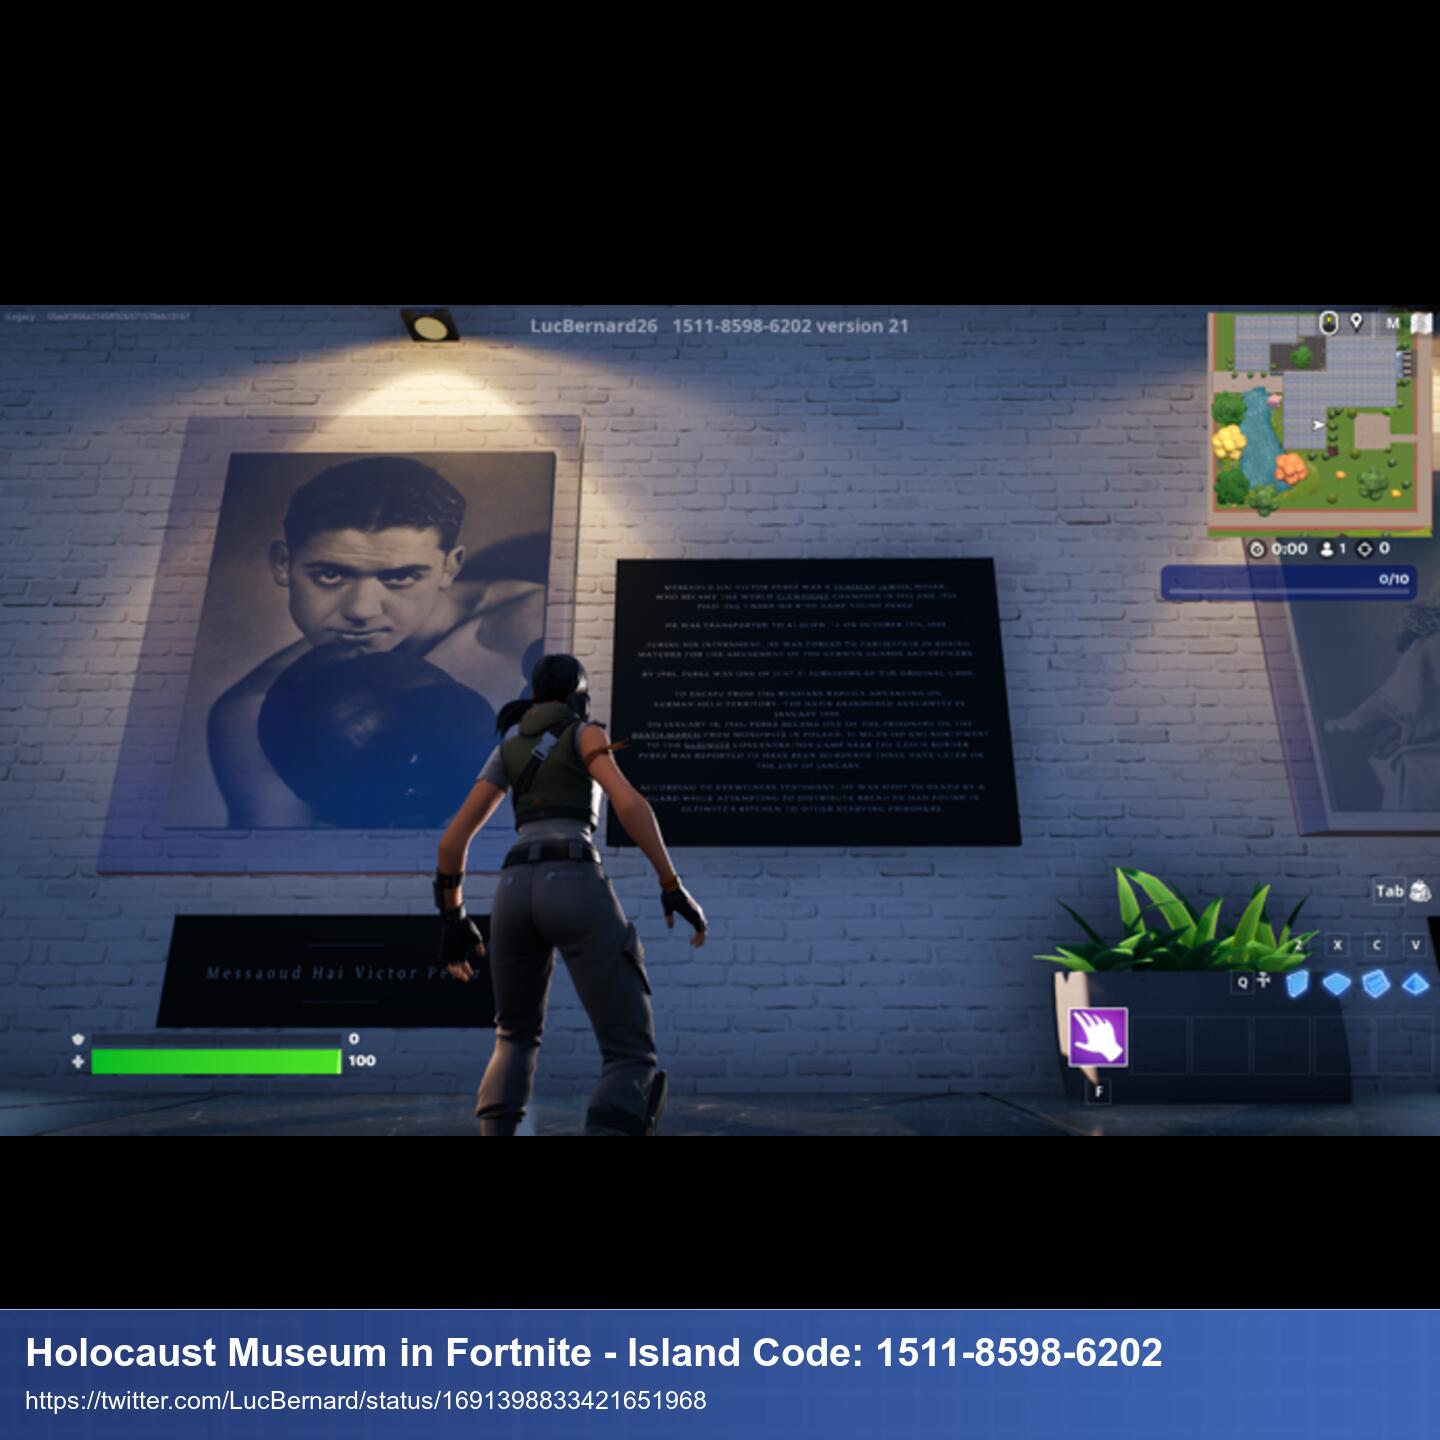 Fortnite Figur steht vor einer Wand. An der Wand ein großes Foto und daneben ein Text-Tafel, die Infos zum Holocaust erklärt.